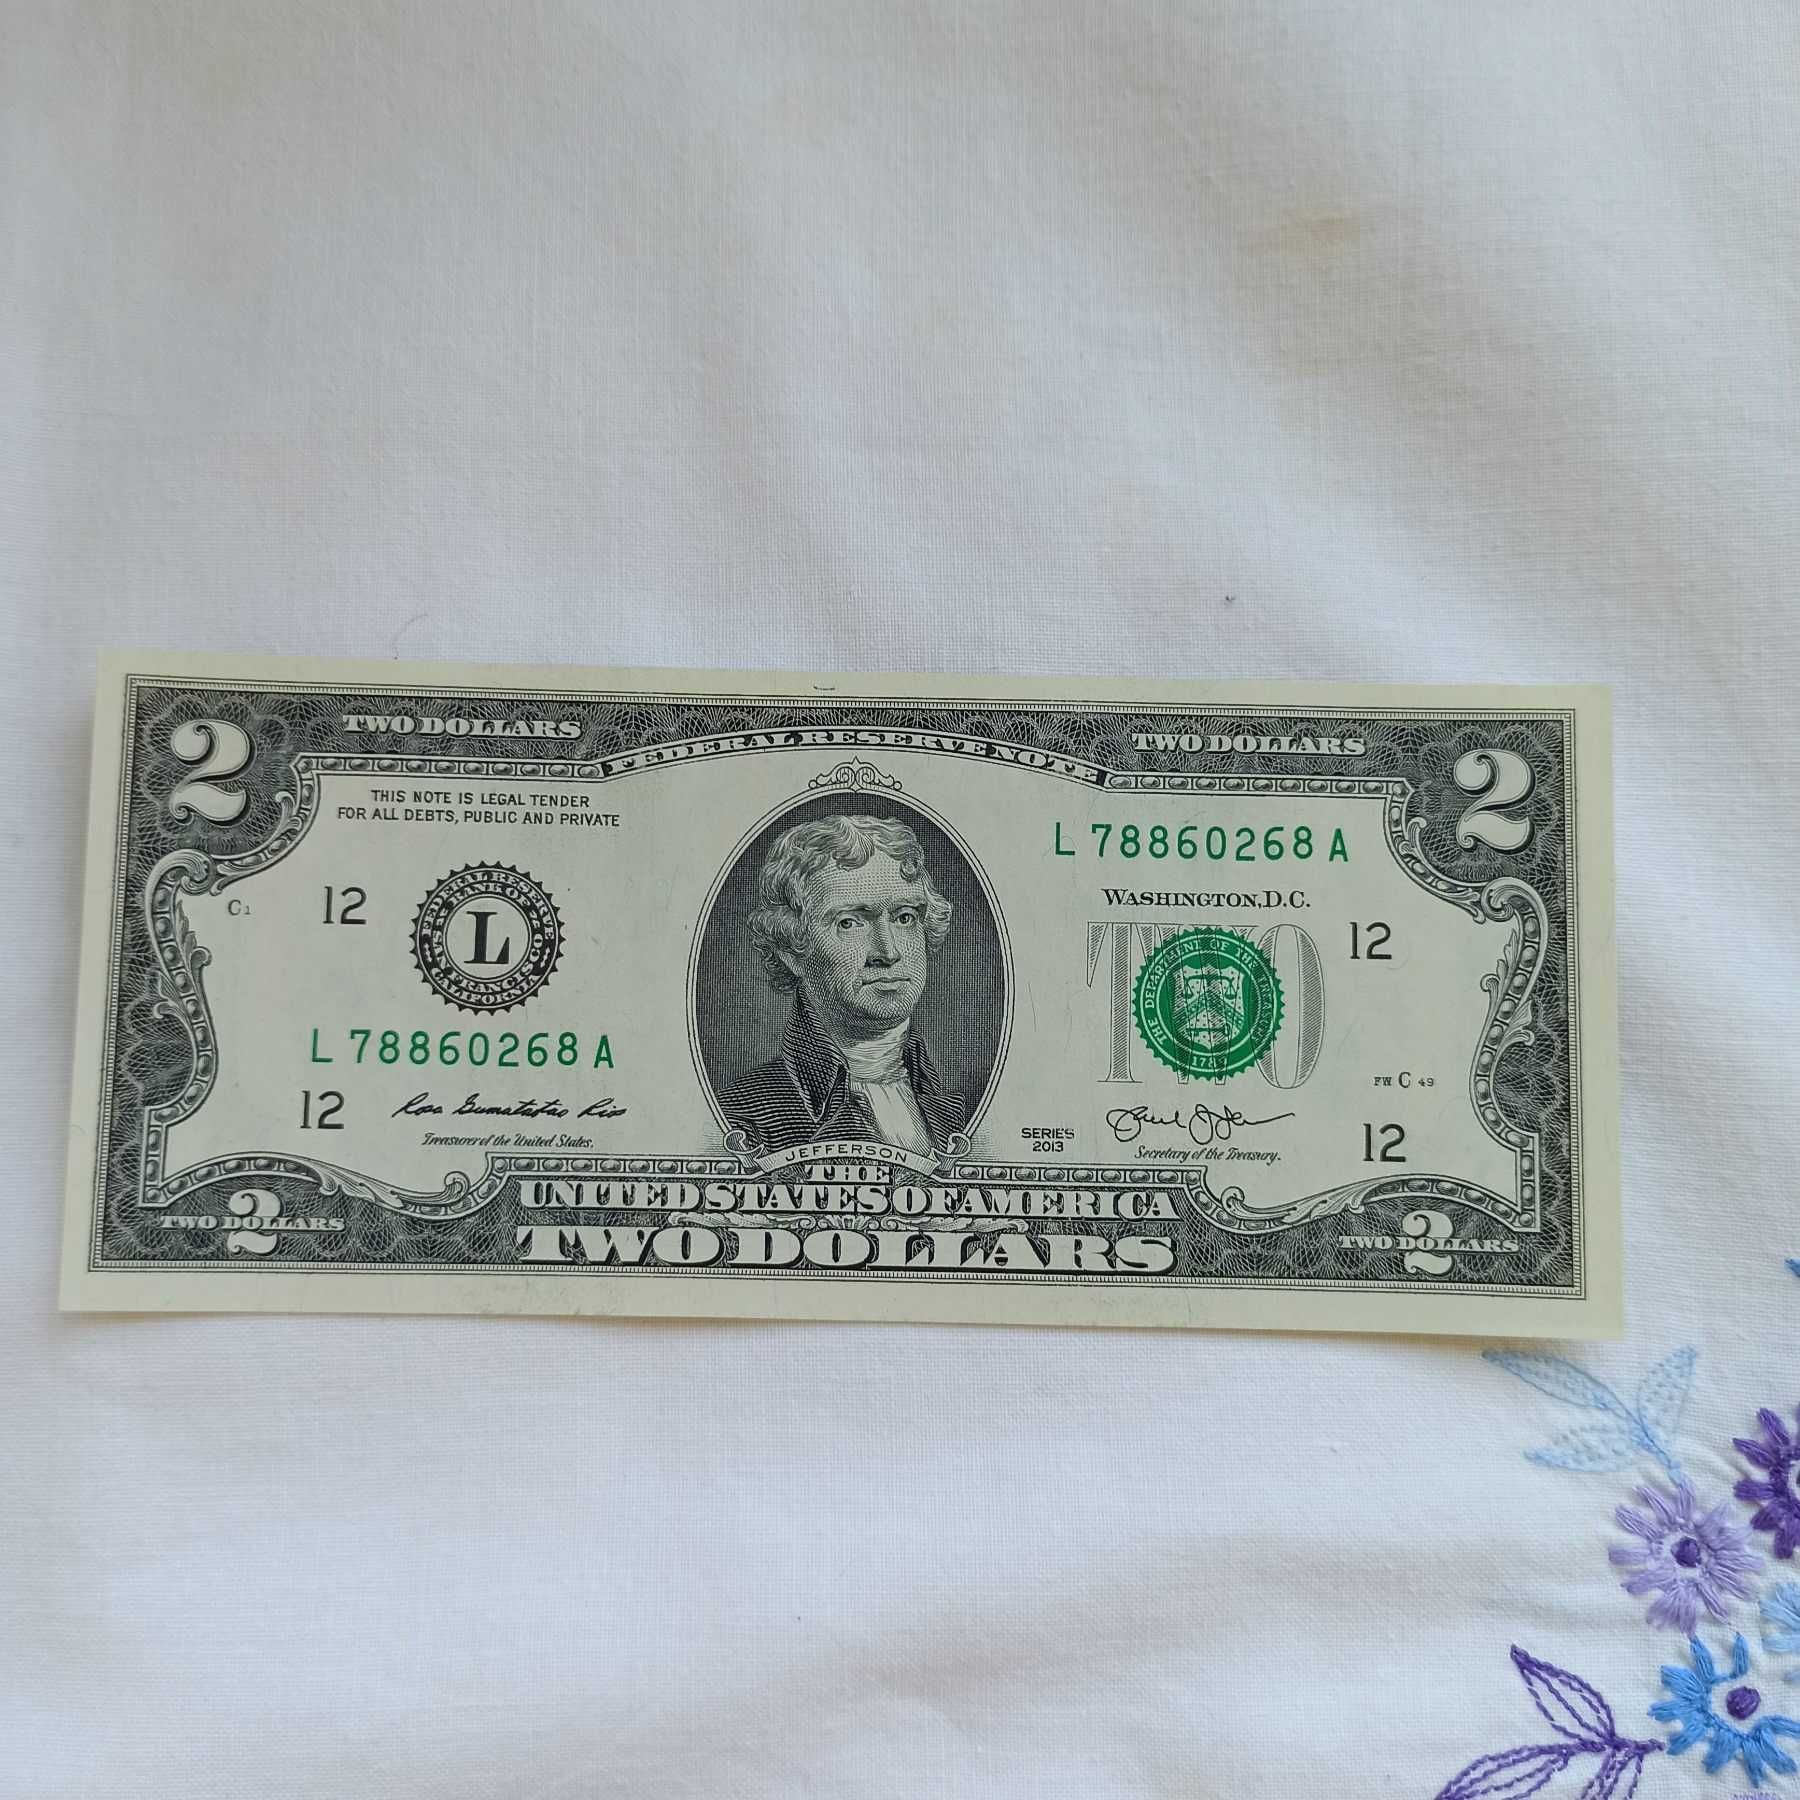 Купюра доллара 2-ва США 2013 годы в обращении никогда не была